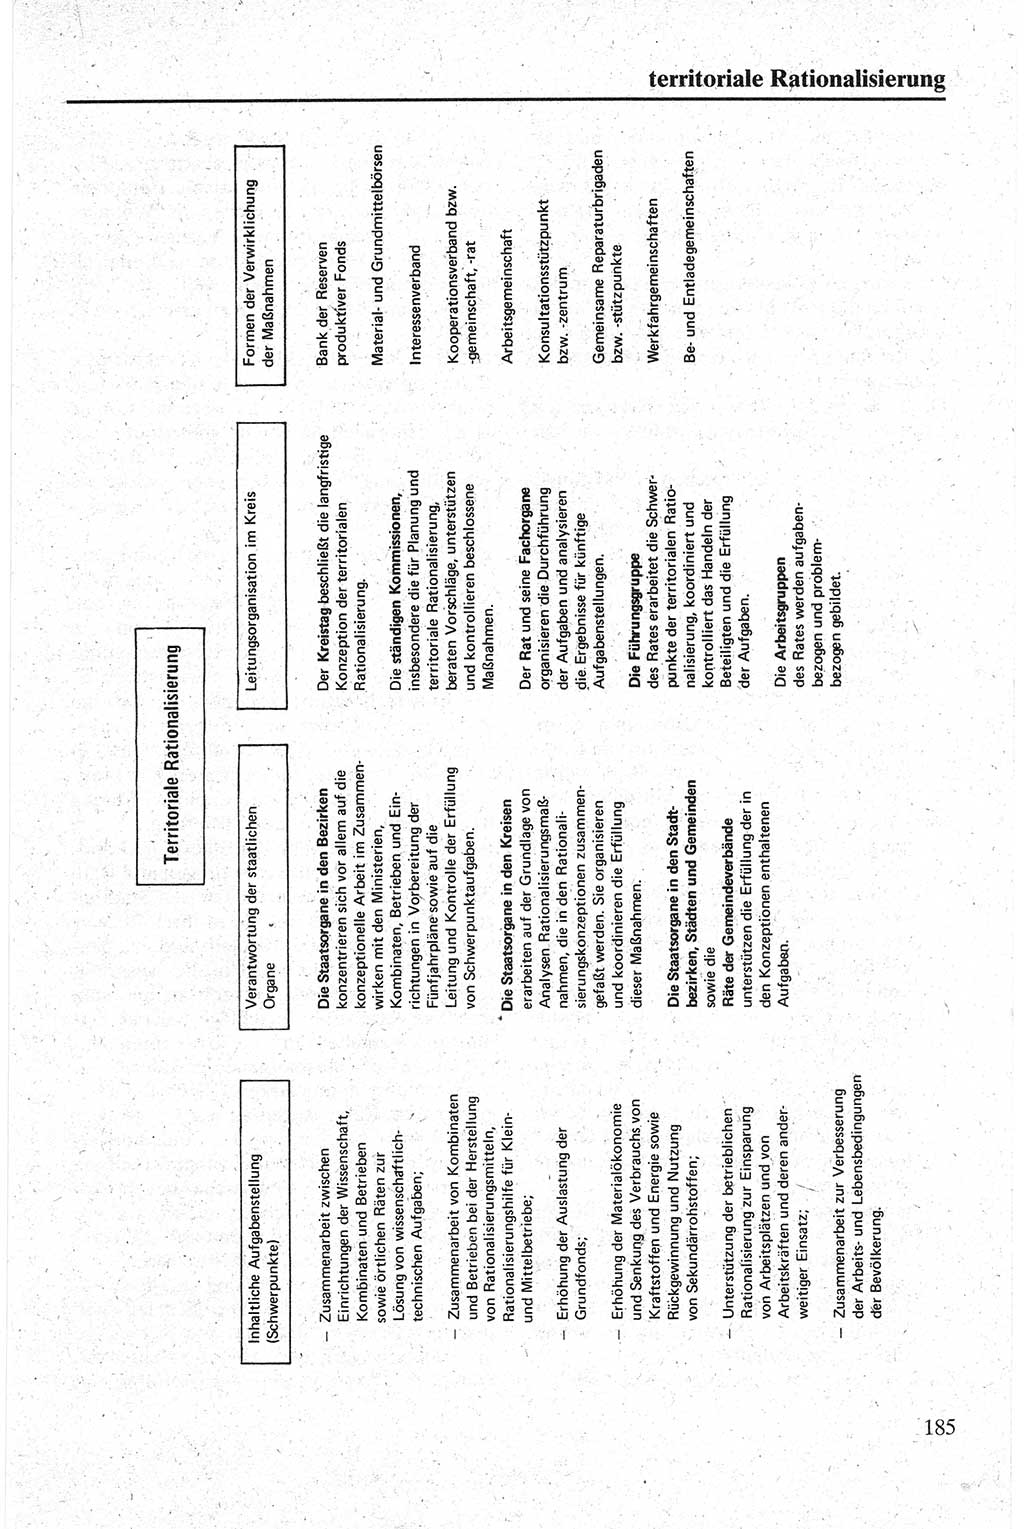 Handbuch für den Abgeordneten [Deutsche Demokratische Republik (DDR)] 1984, Seite 185 (Hb. Abg. DDR 1984, S. 185)